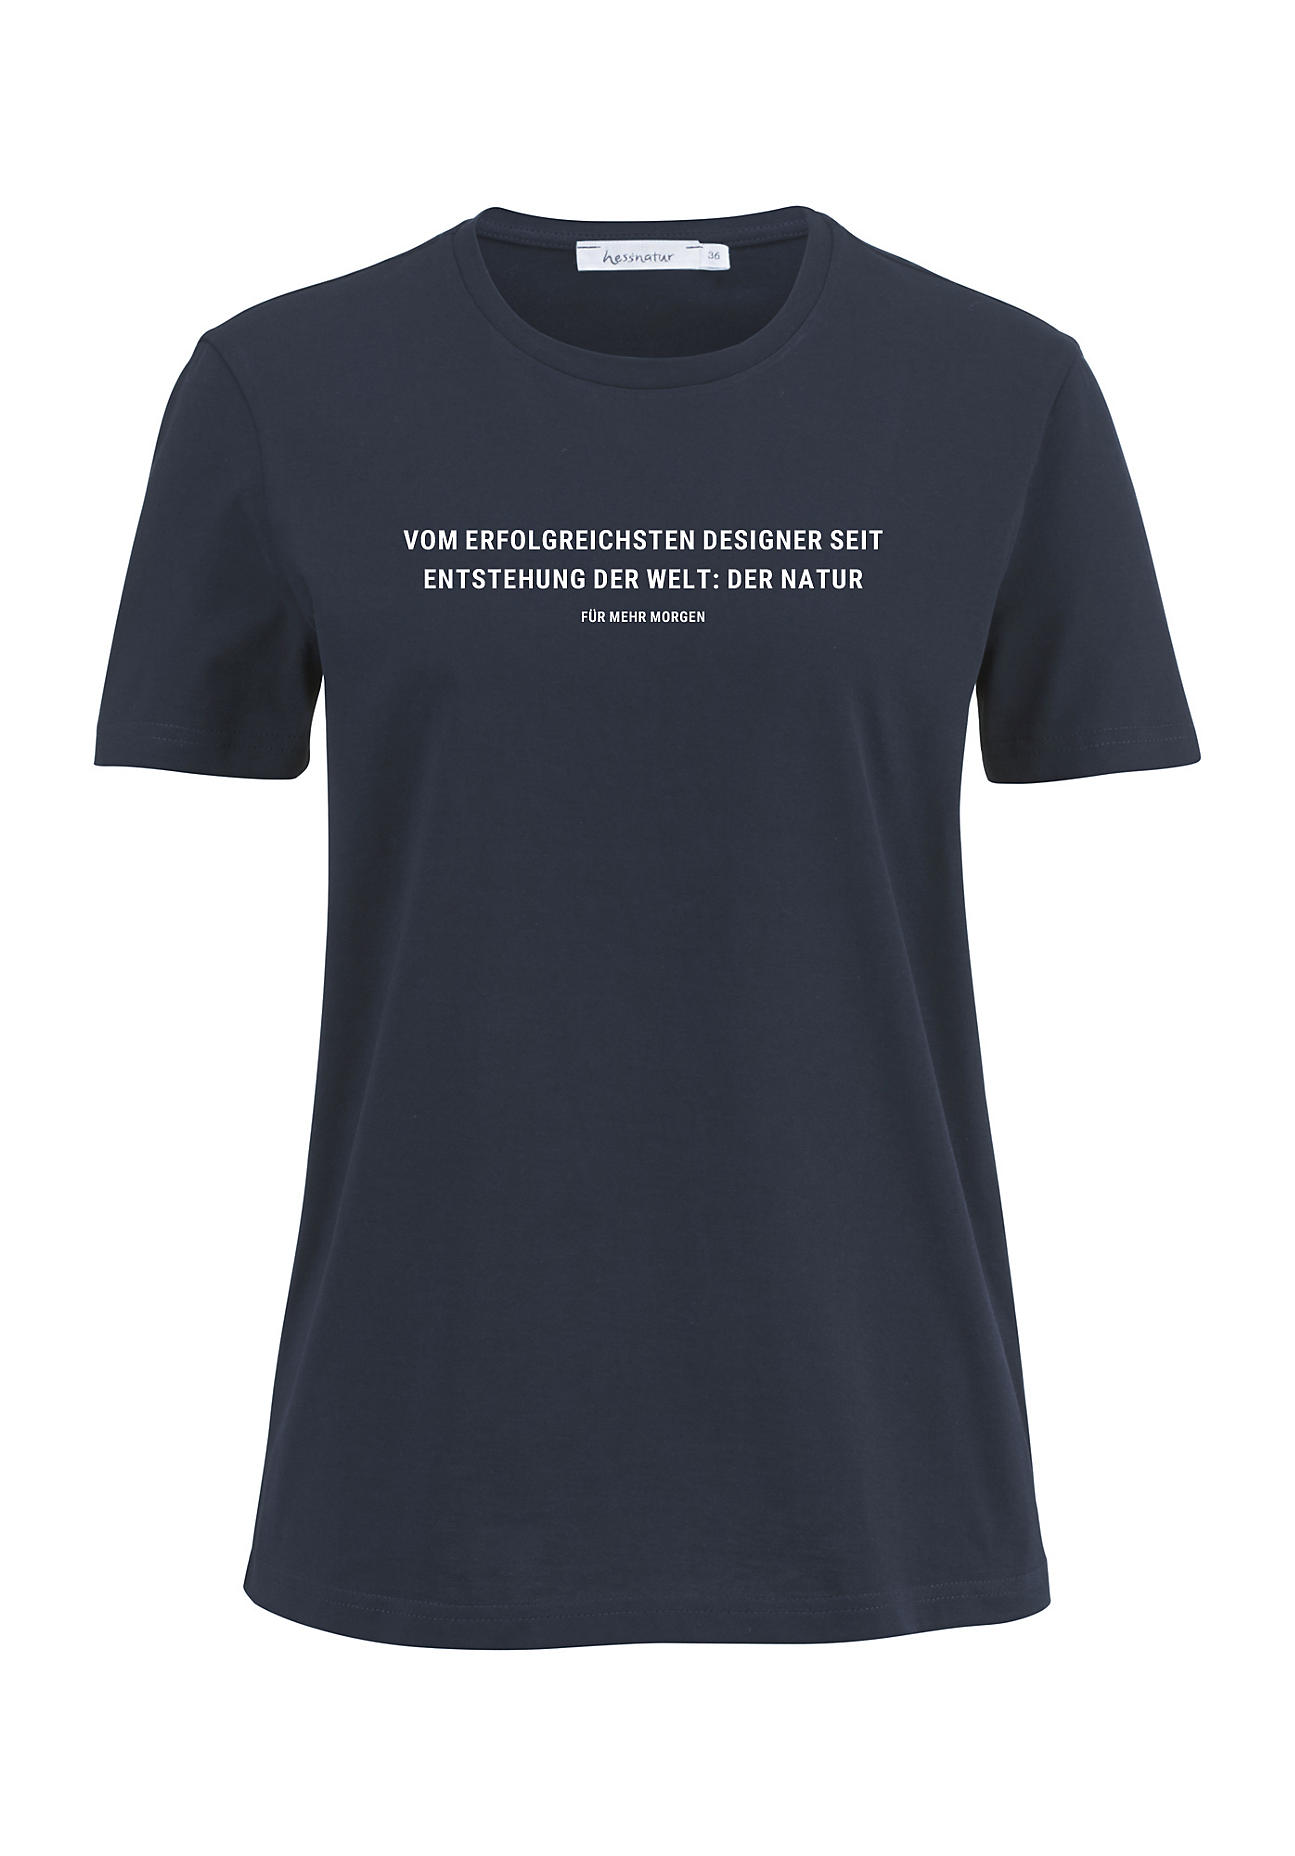 hessnatur Damen Statement Shirt aus Bio-Baumwolle - blau - Größe 36